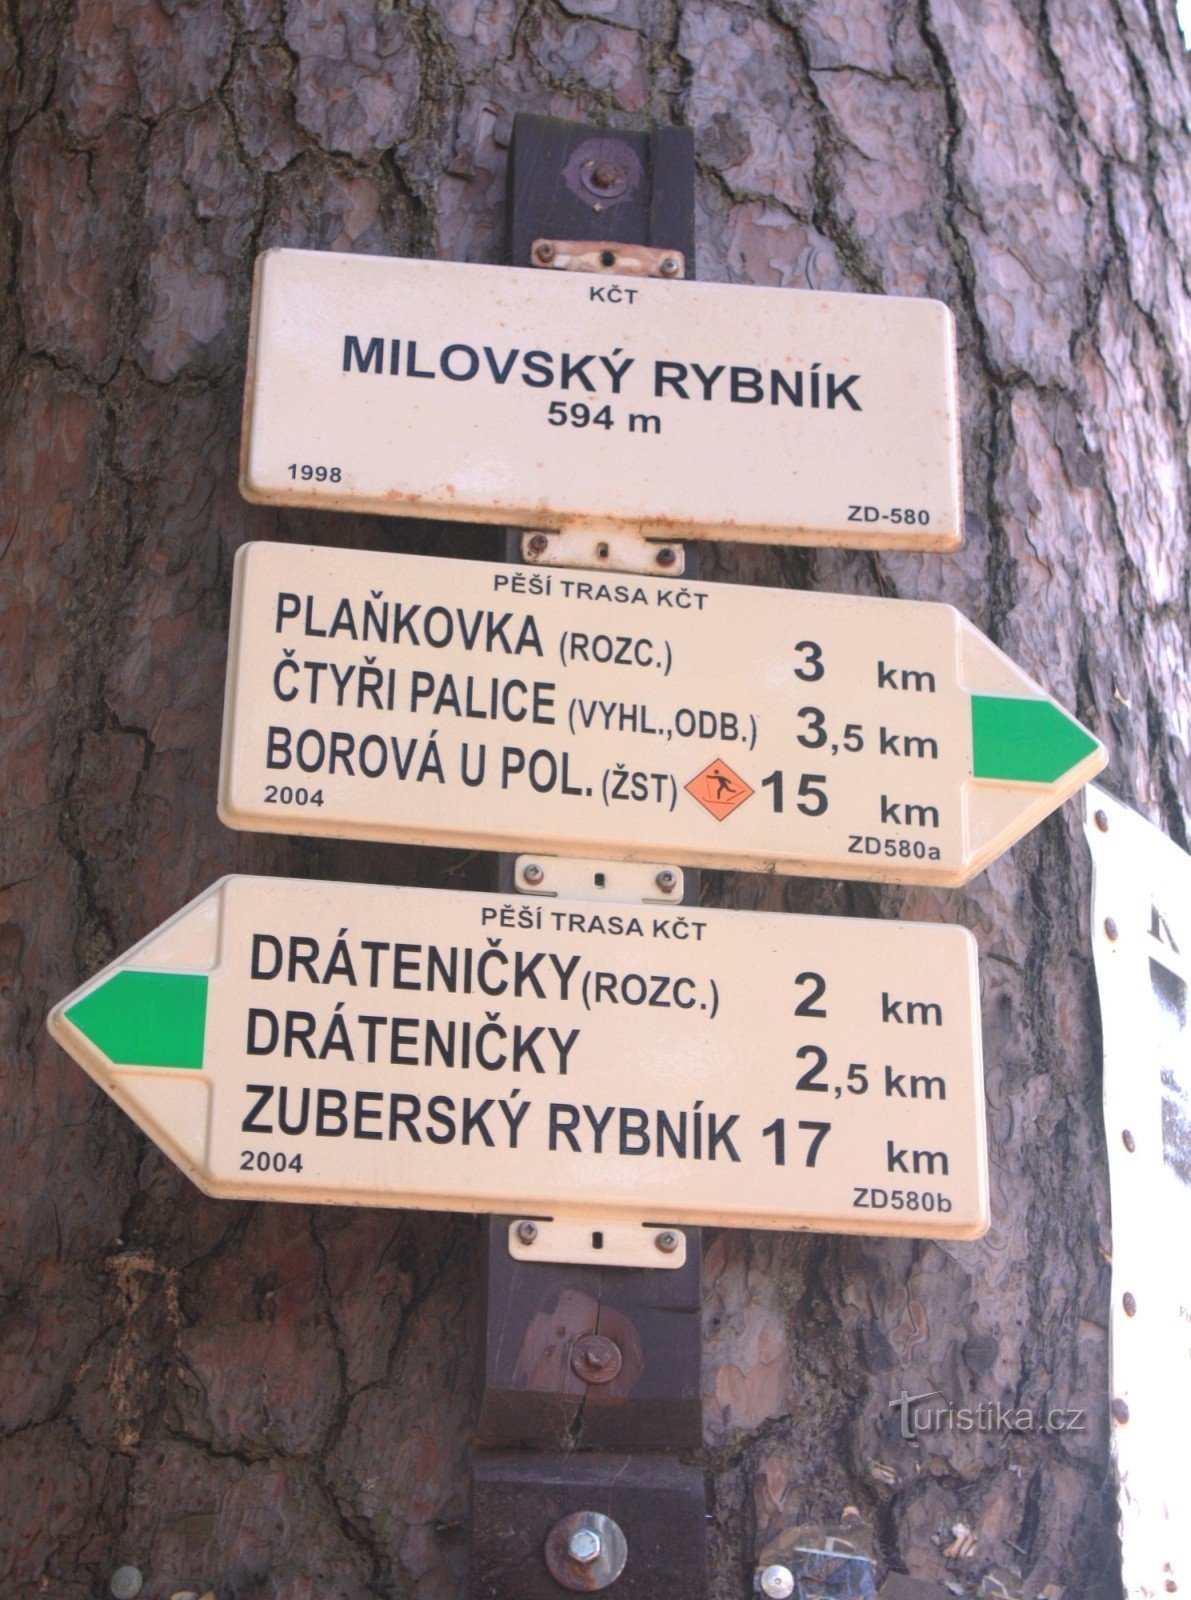 Milovského rybník の案内標識